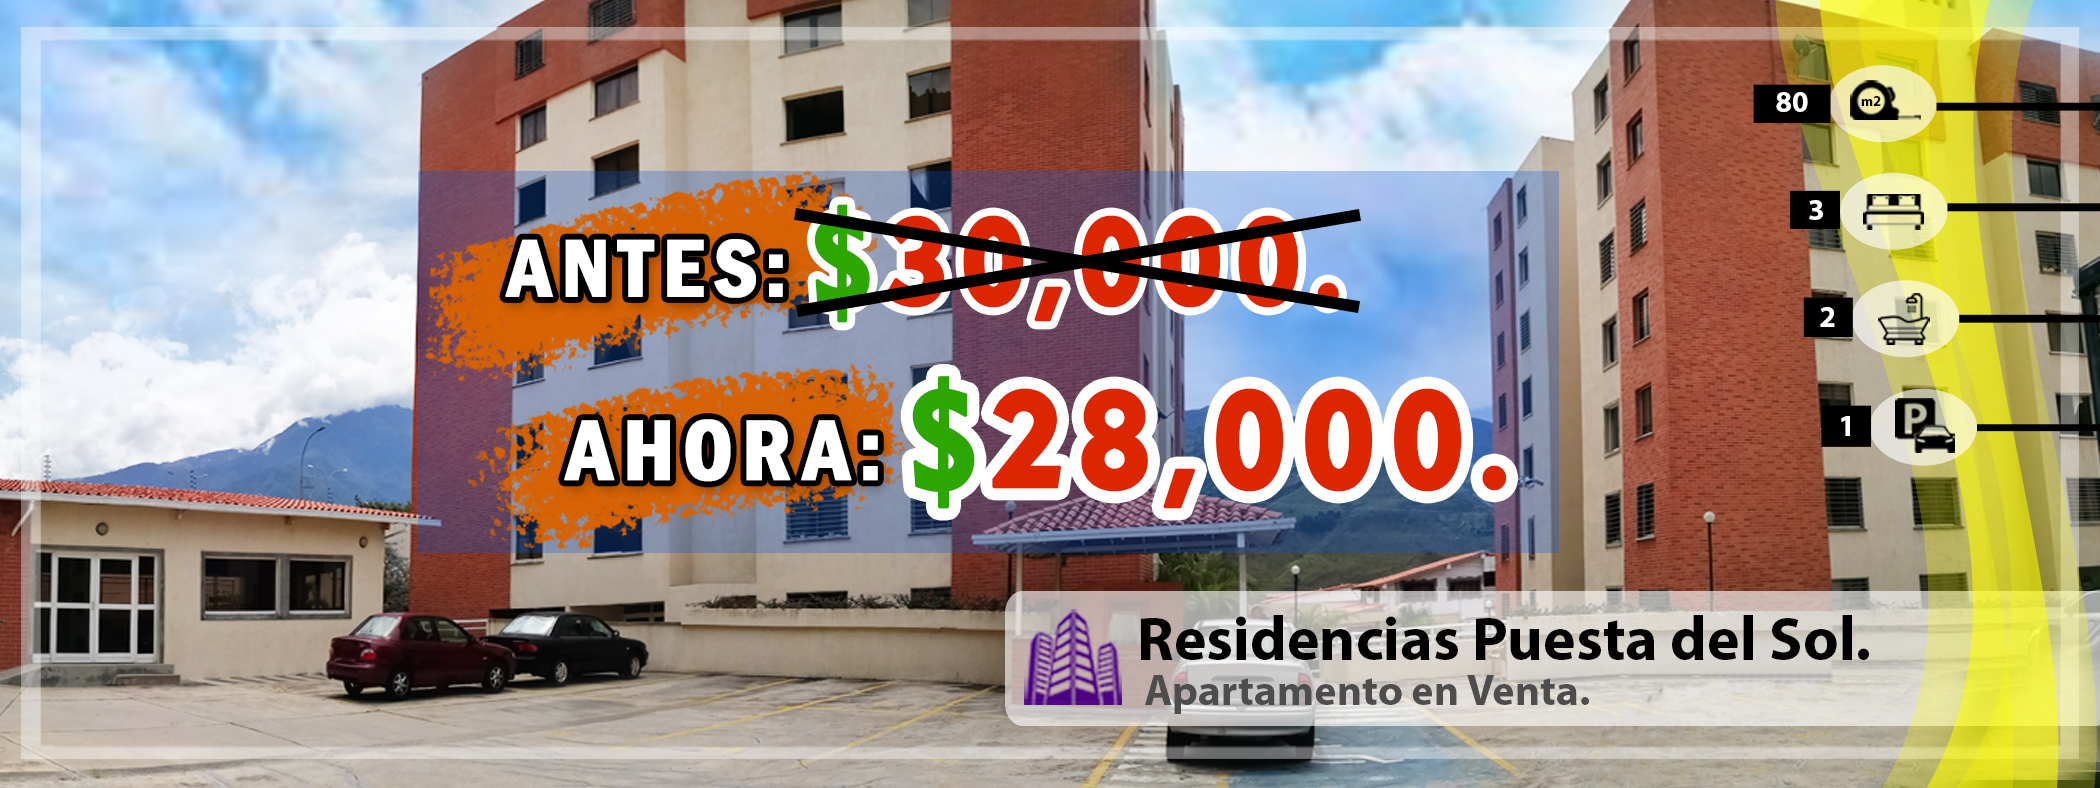 Apartamento en Mérida. Residencias Puesta del Sol, DE PRIMERA, A ESTRENAR!!!